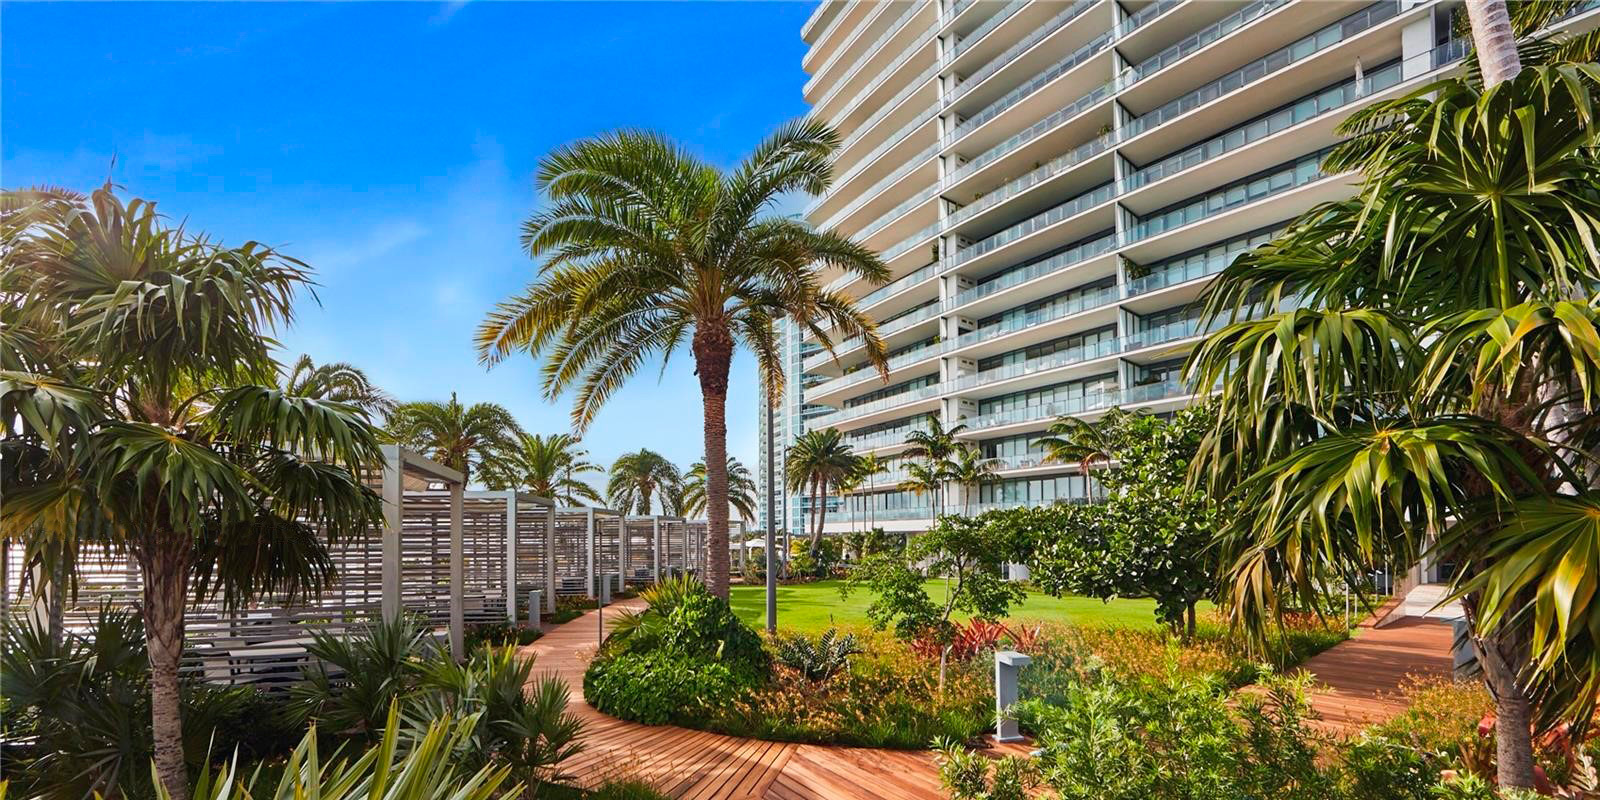 Tropical Garden – Apogee Condominium – South Beach, Miami, Florida